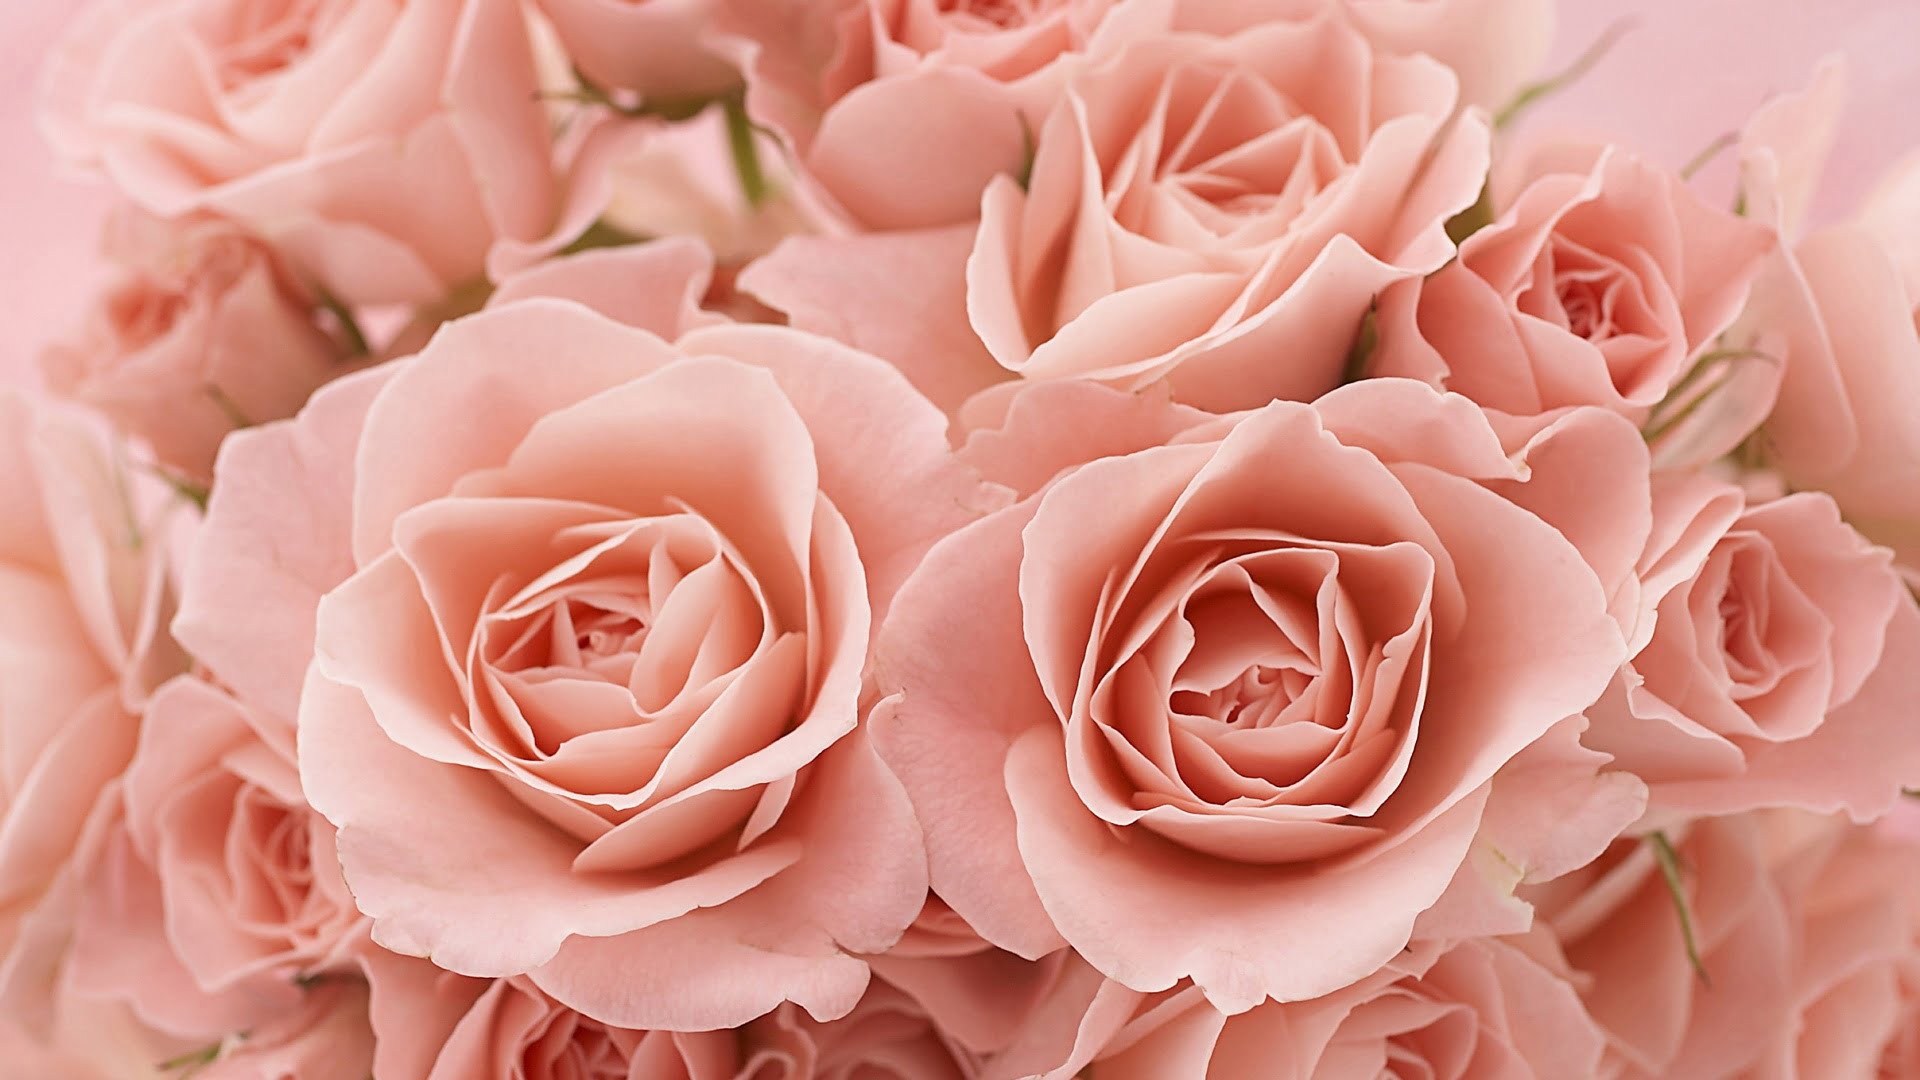 Hình nền hoa hồng là lựa chọn phổ biến nhất cho những tín đồ yêu thích màu hồng. Tuy nhiên, để tìm kiếm một bức ảnh hình nền hoa hồng độc đáo, tuyệt đẹp và thú vị không phải là điều dễ dàng. Tại đây, chúng tôi cung cấp cho bạn những bức ảnh hoa hồng đẹp nhất, phù hợp với mọi phong cách và sở thích của bạn.